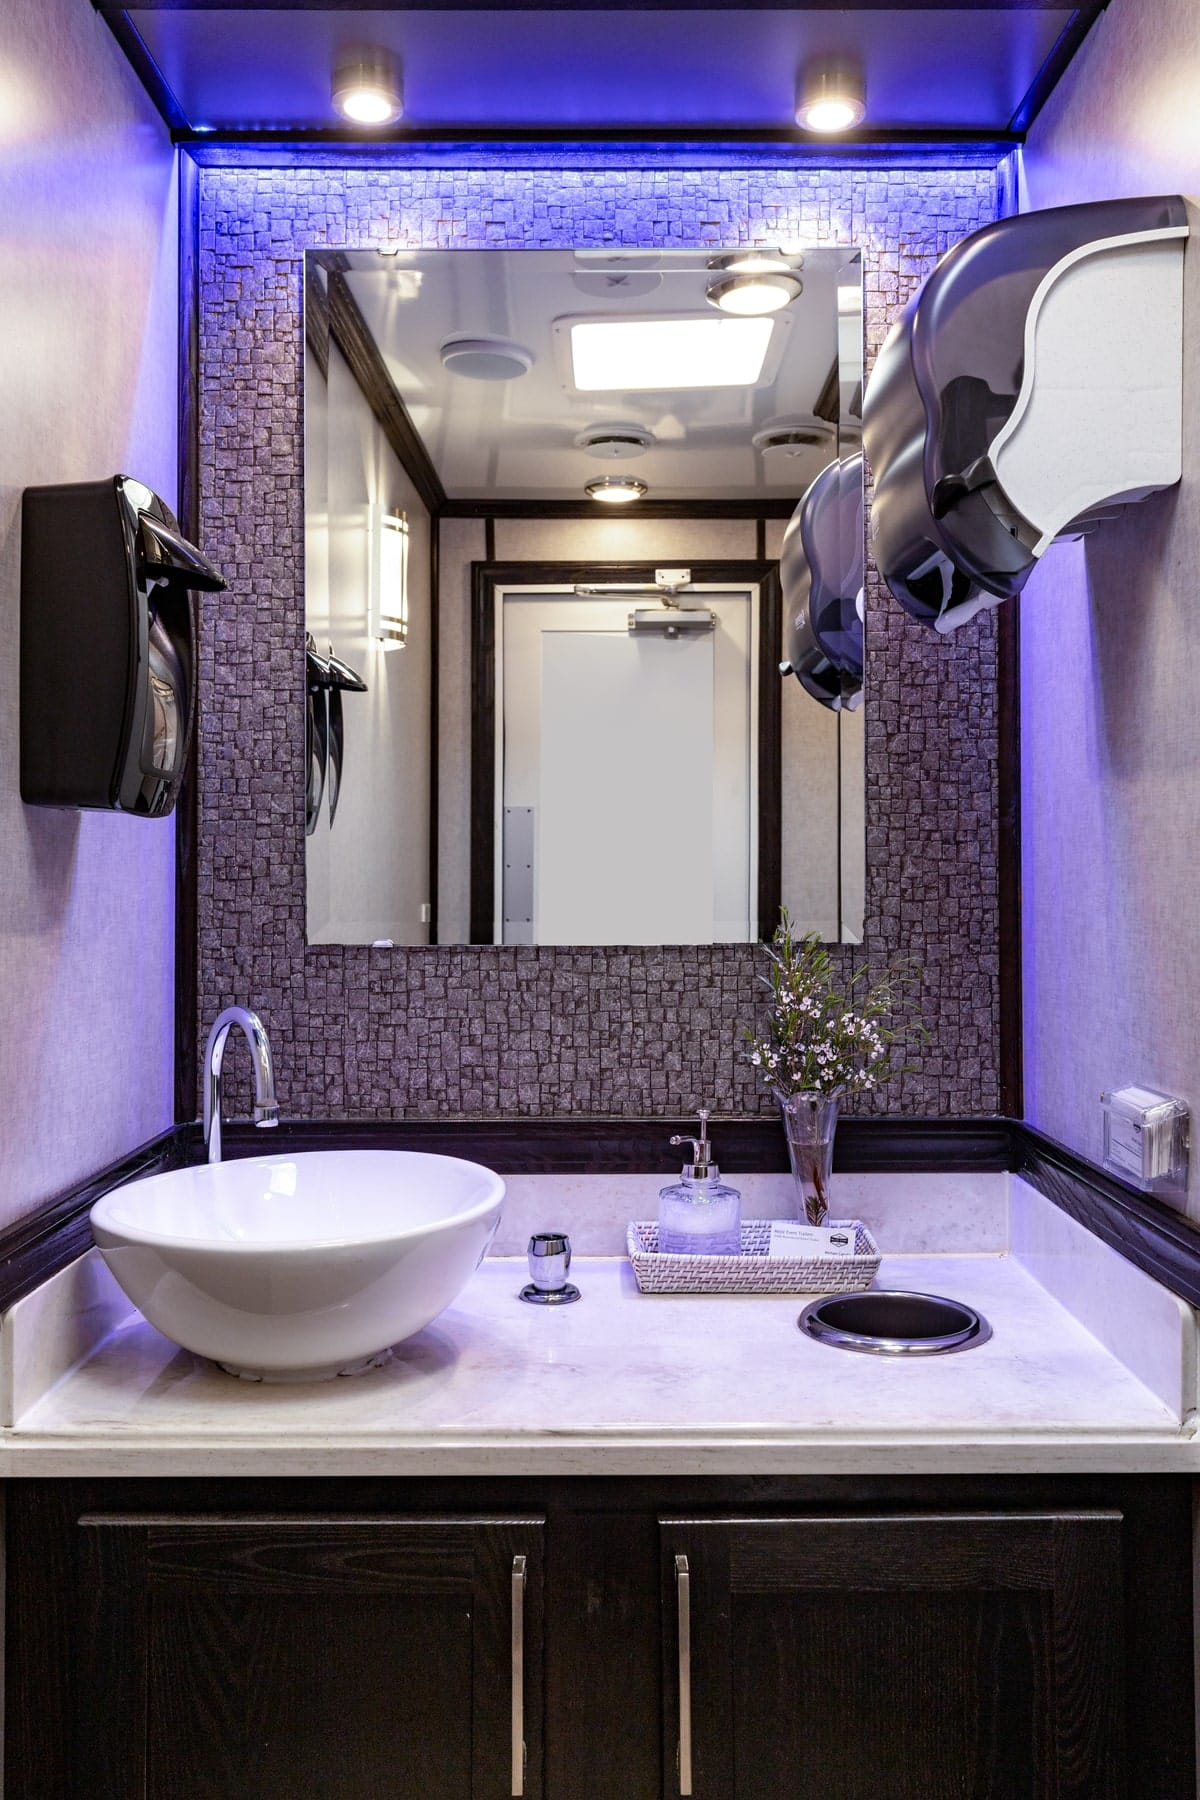 3-Station Luxury Restroom Trailer Rental – Interior View 3